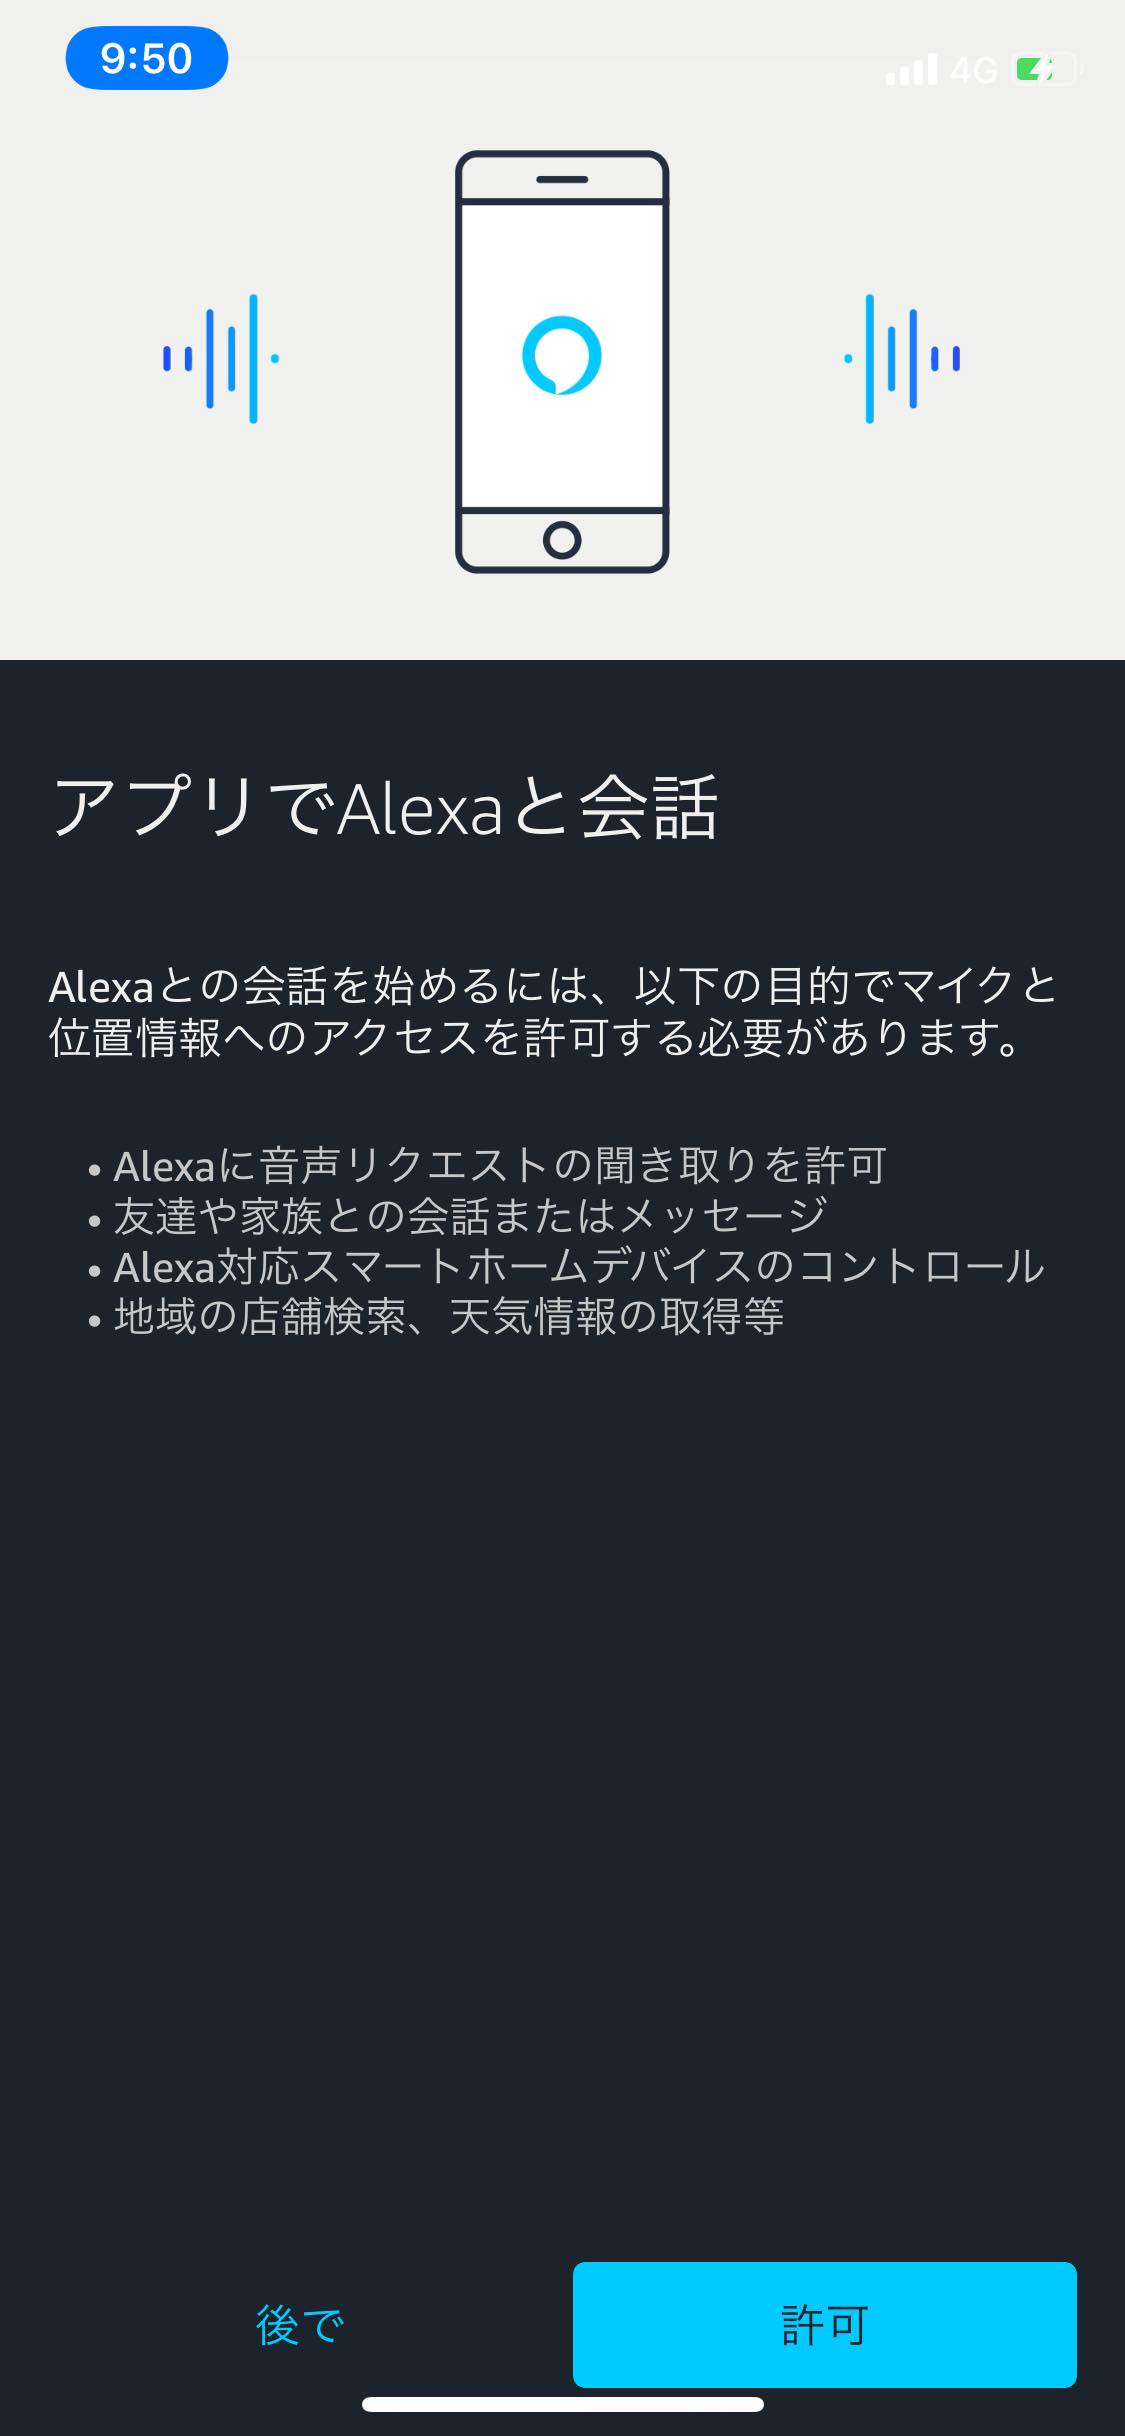 ｢Amazon Alexa｣のiOS向け公式アプリ、Alexaとの会話に対応